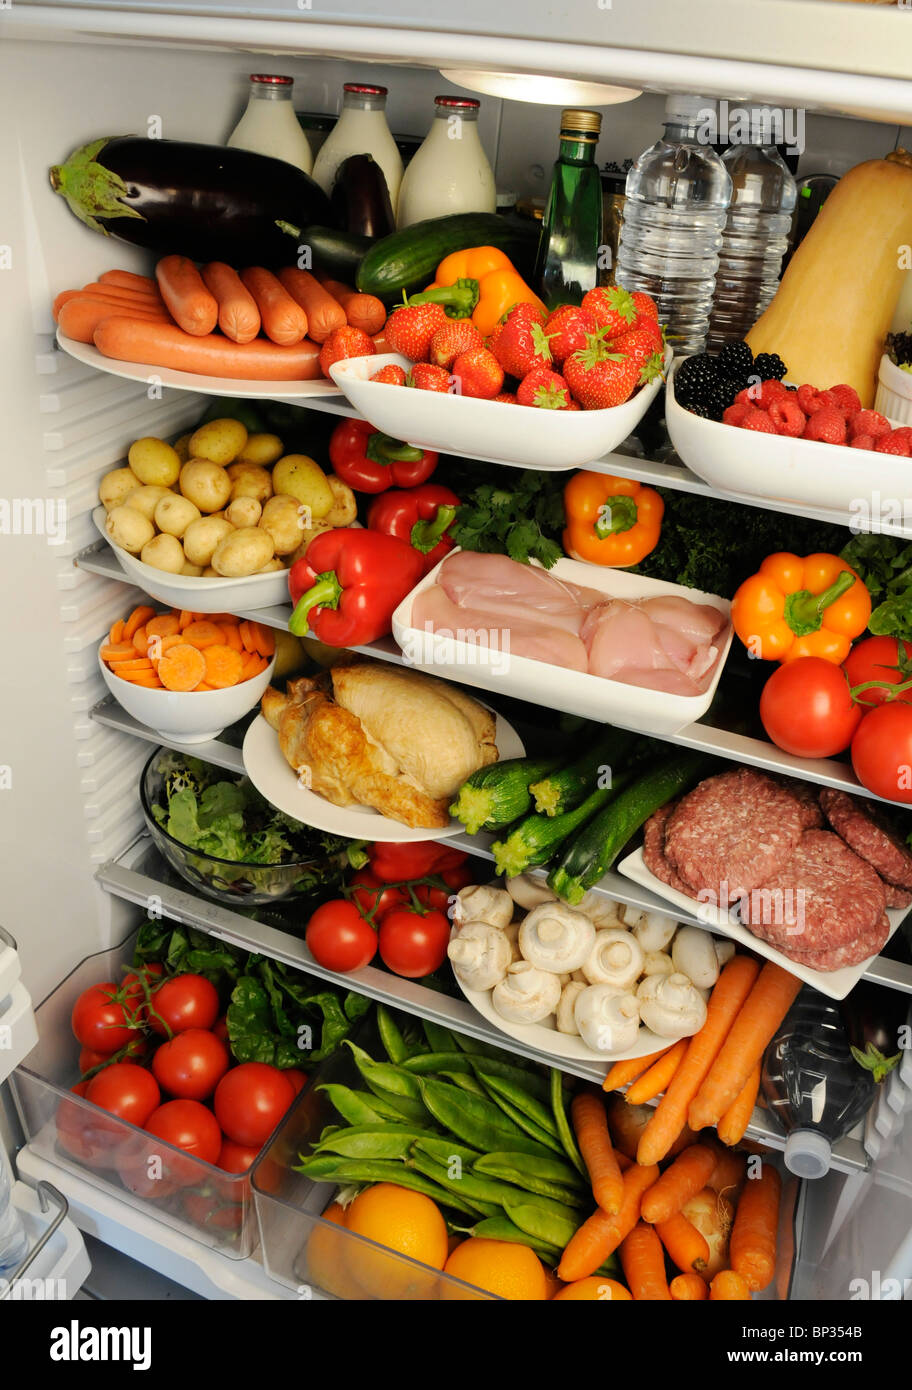 Vue à l'intérieur de réfrigérateur avec des étagères remplies de produits frais Banque D'Images